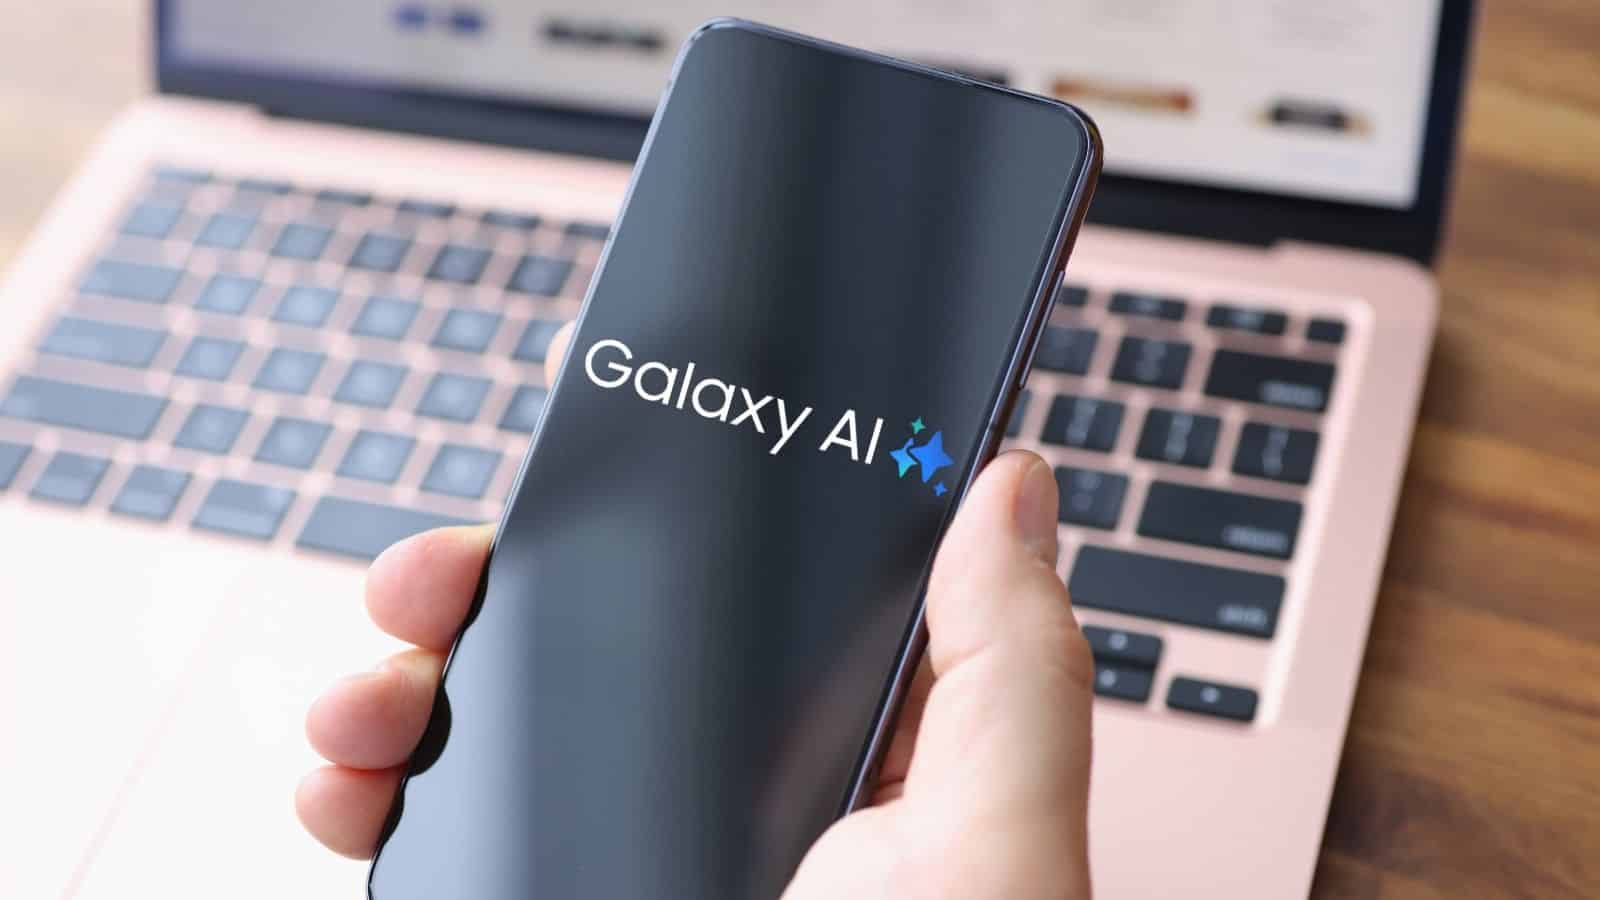  Samsung: arrivano le funzionalità Galaxy AI su altri smartphone Galaxy